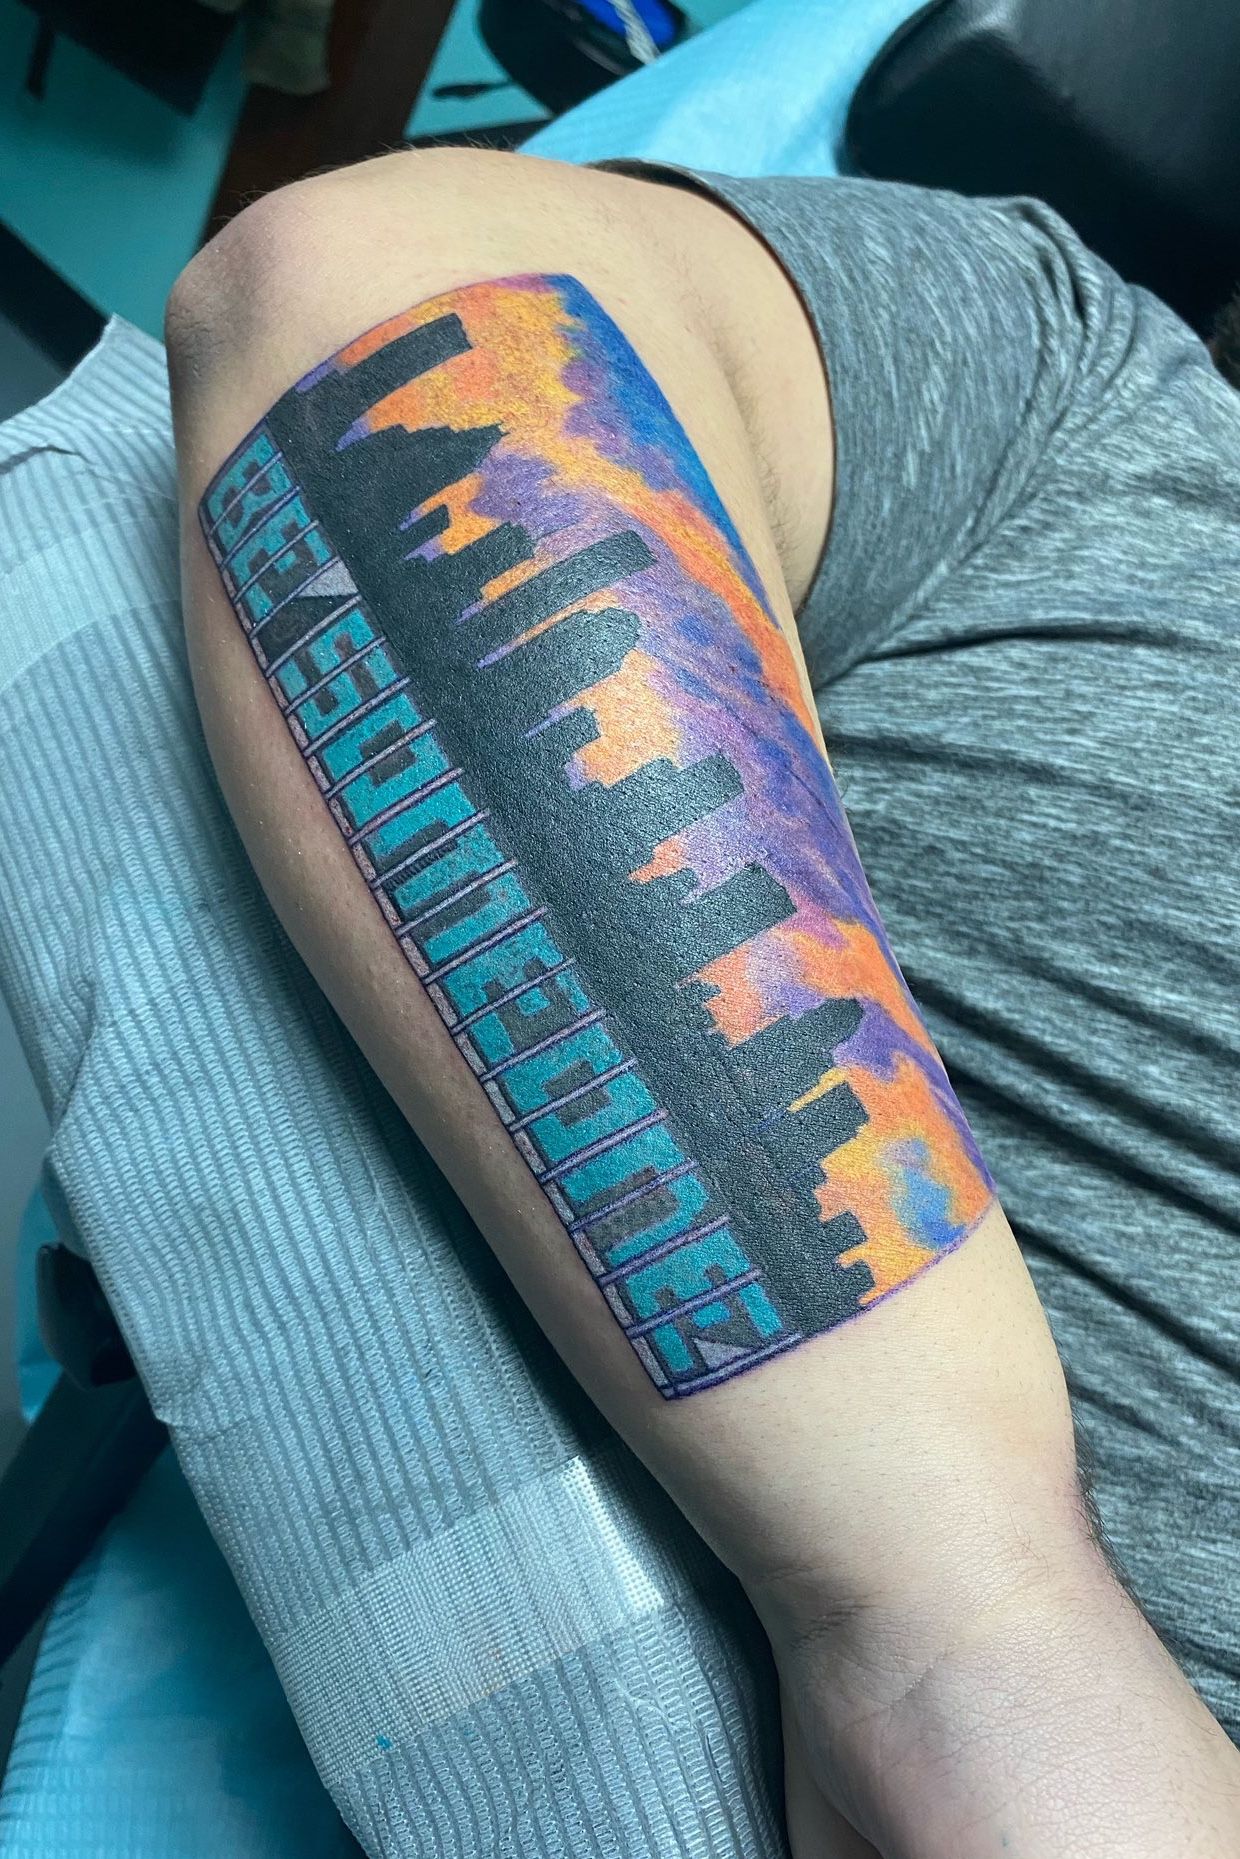 Houston Tattoo Artist Work at 3rd Generation Ink CRAIGDZEL on Instagram   rtattoo